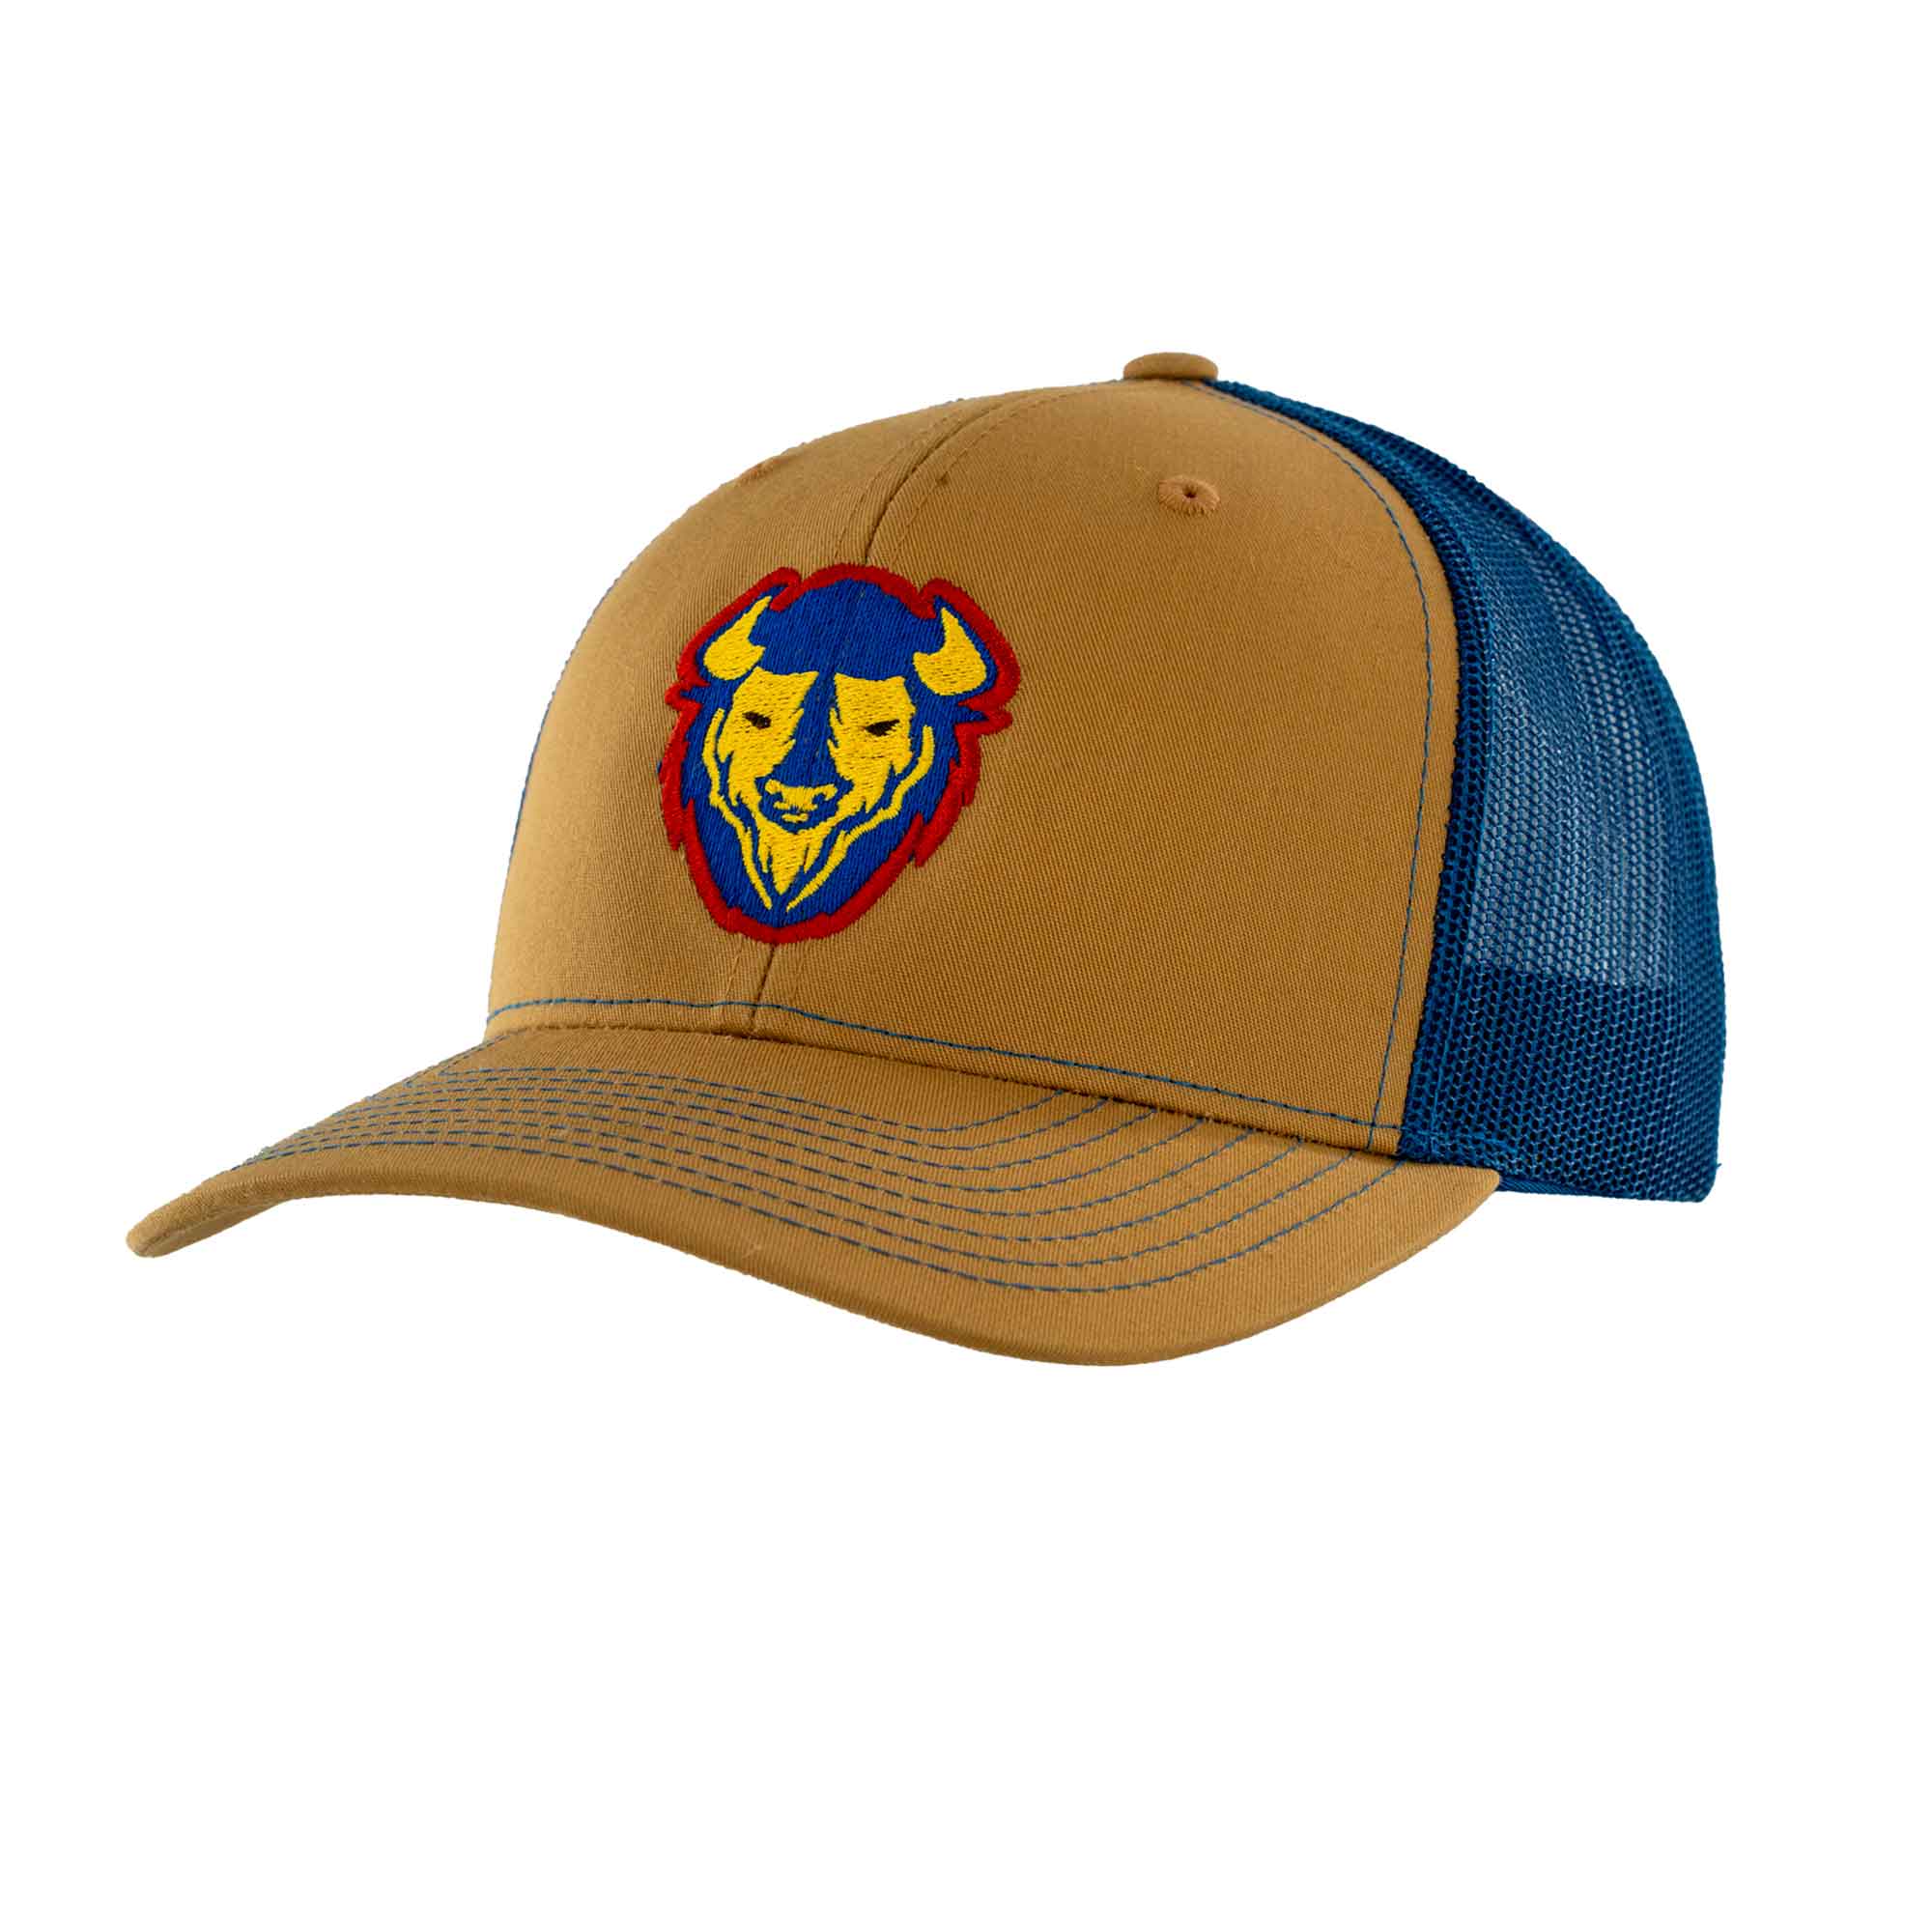 Sunset Bison 2.0 Trucker Hat